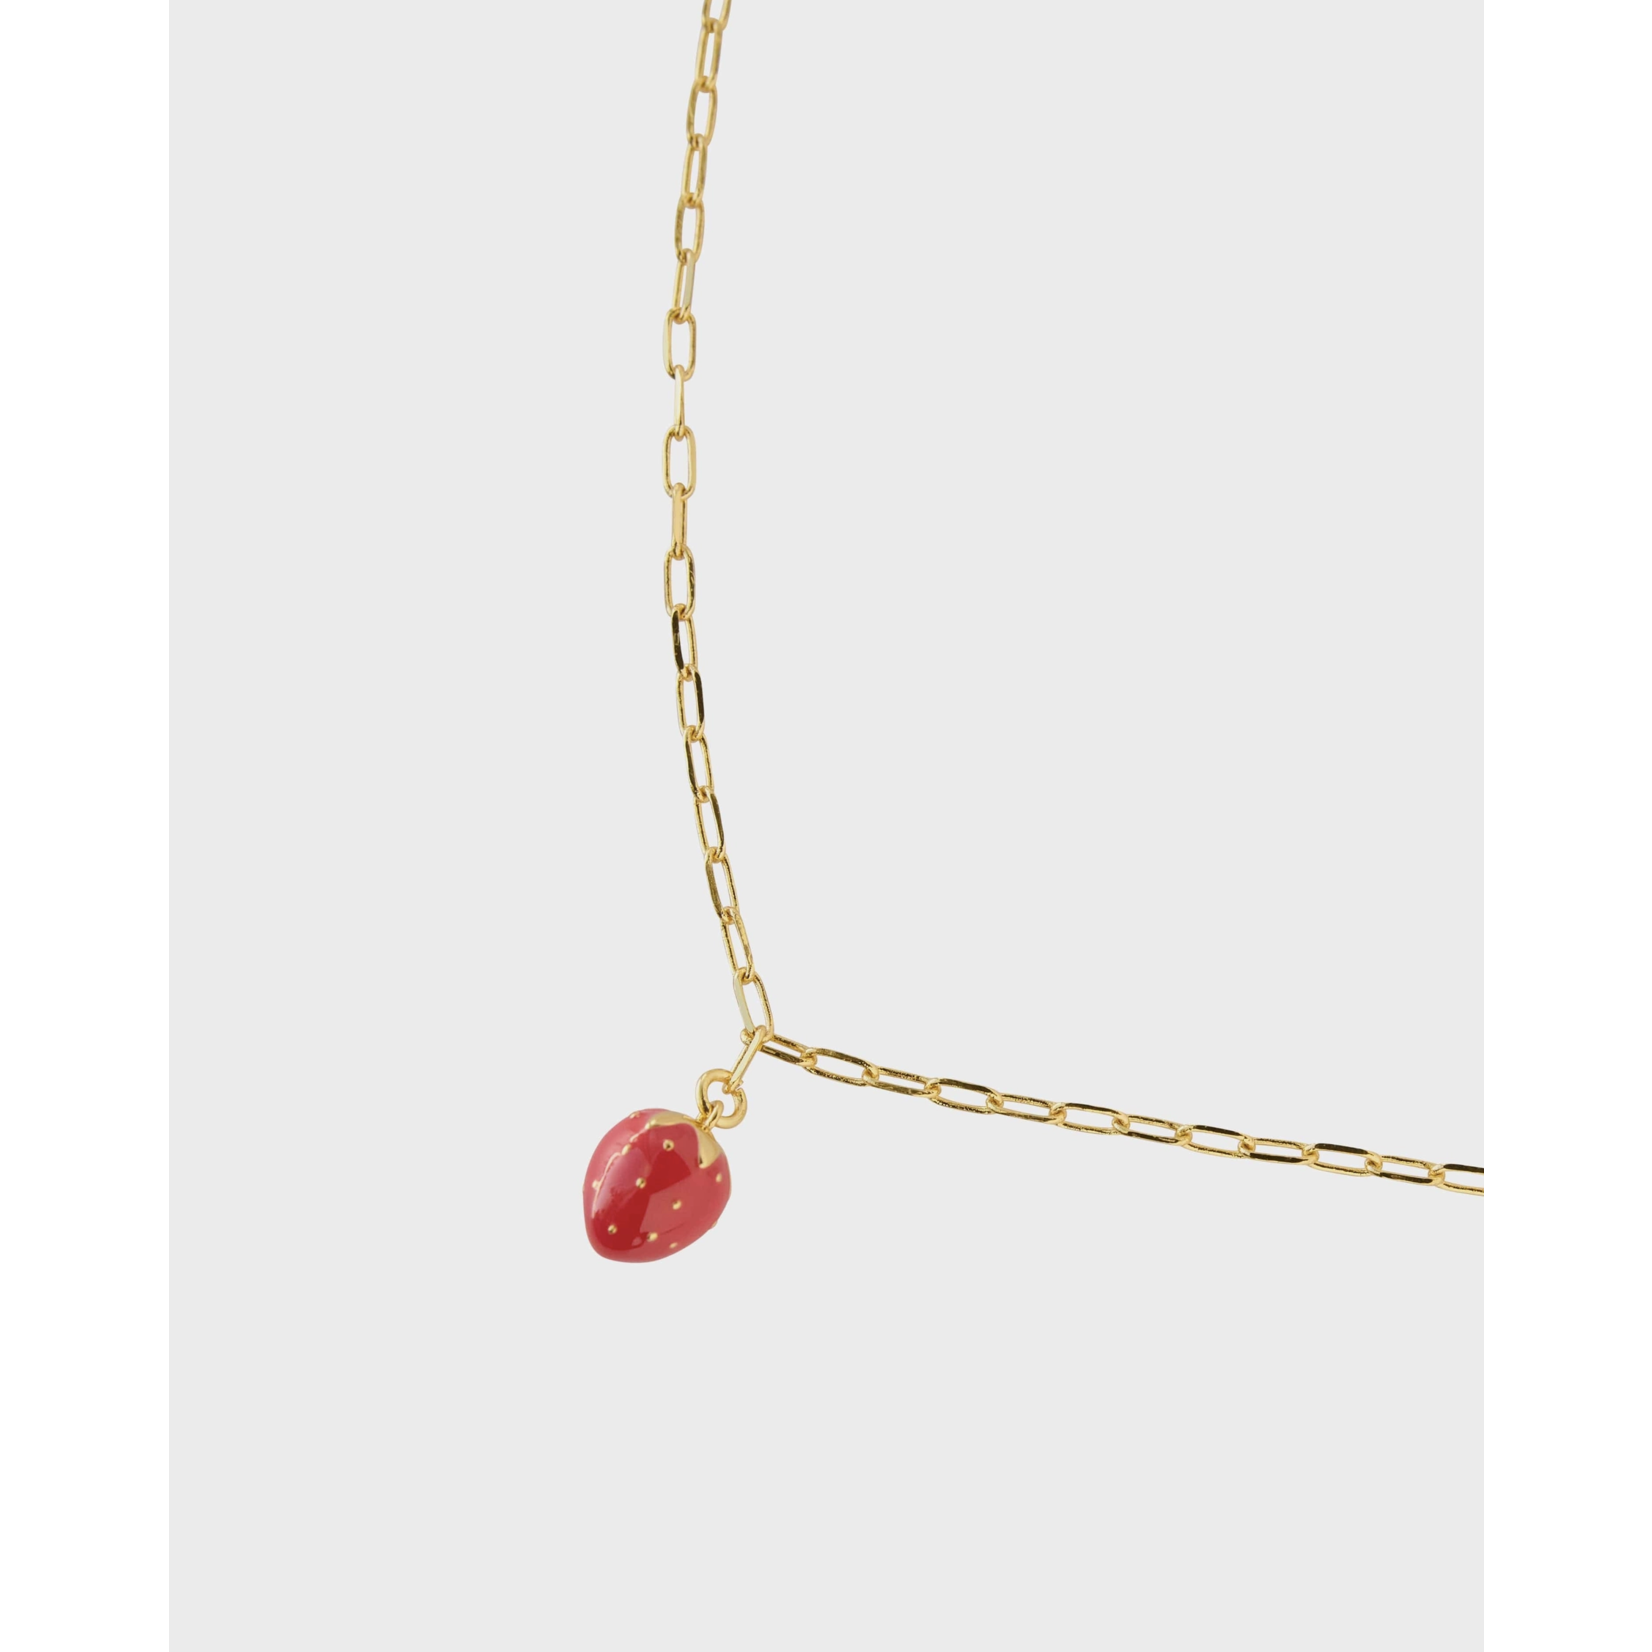 Strawberry Fields Necklace